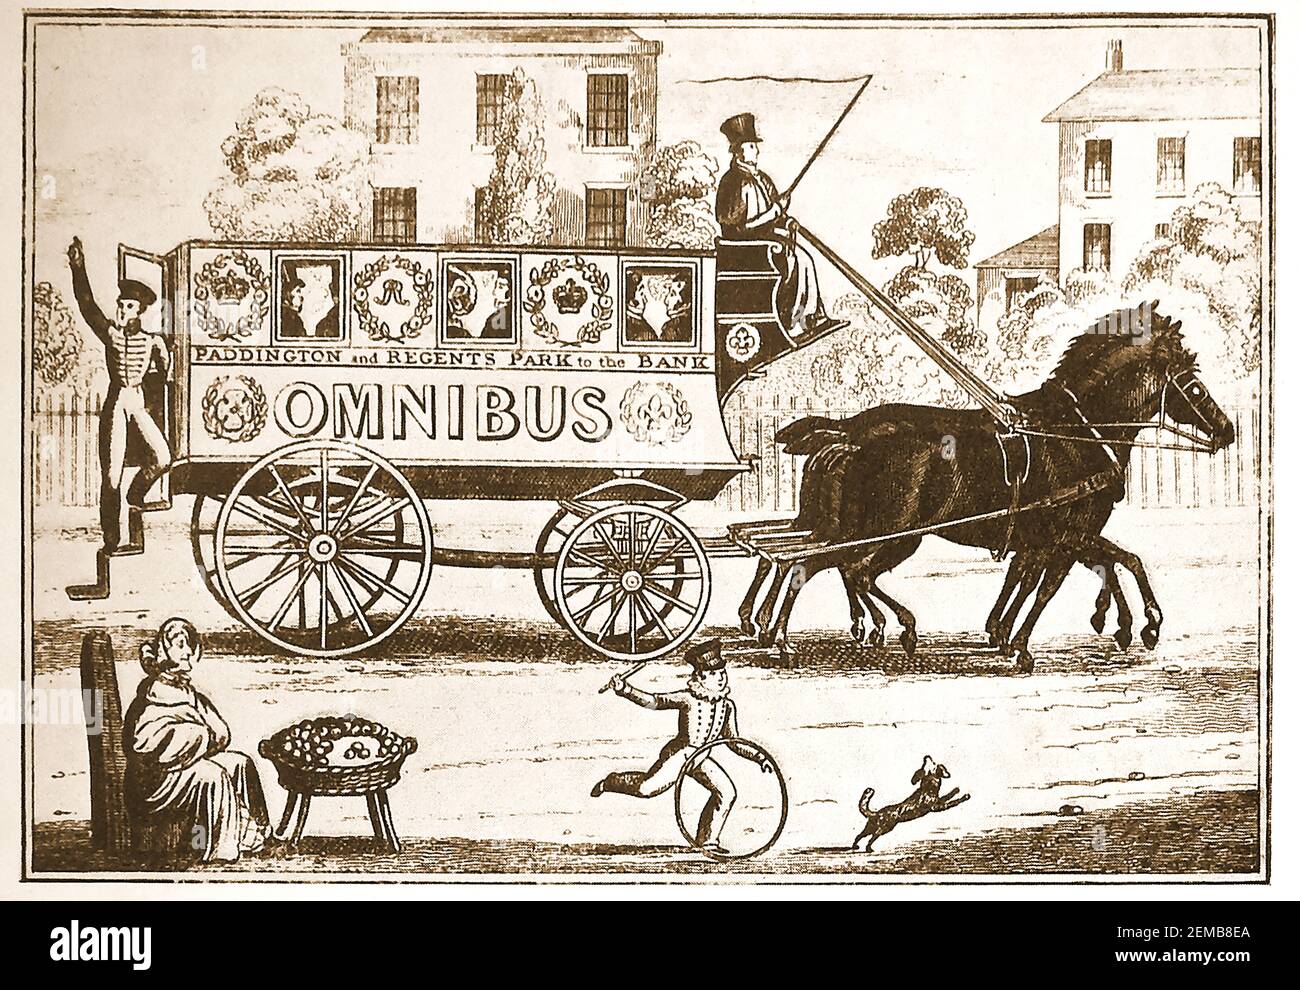 George Shilbeers erster Pferdebus (Omnibus), der von Paddington und Regents Park zur Thames Bank (einige sagen die Bank of England) in London (Großbritannien) fuhr. ---- Shilbeer (1797 – 1866) war ein englischer Kutschenbauer, der in Paris beschloss, den Omnibus-Dienst zu kopieren, den er dort in seiner Heimat London gesehen hatte, und dann in Großbritannien Vorreiter dieser Art öffentlicher Verkehrsmittel war. Stockfoto